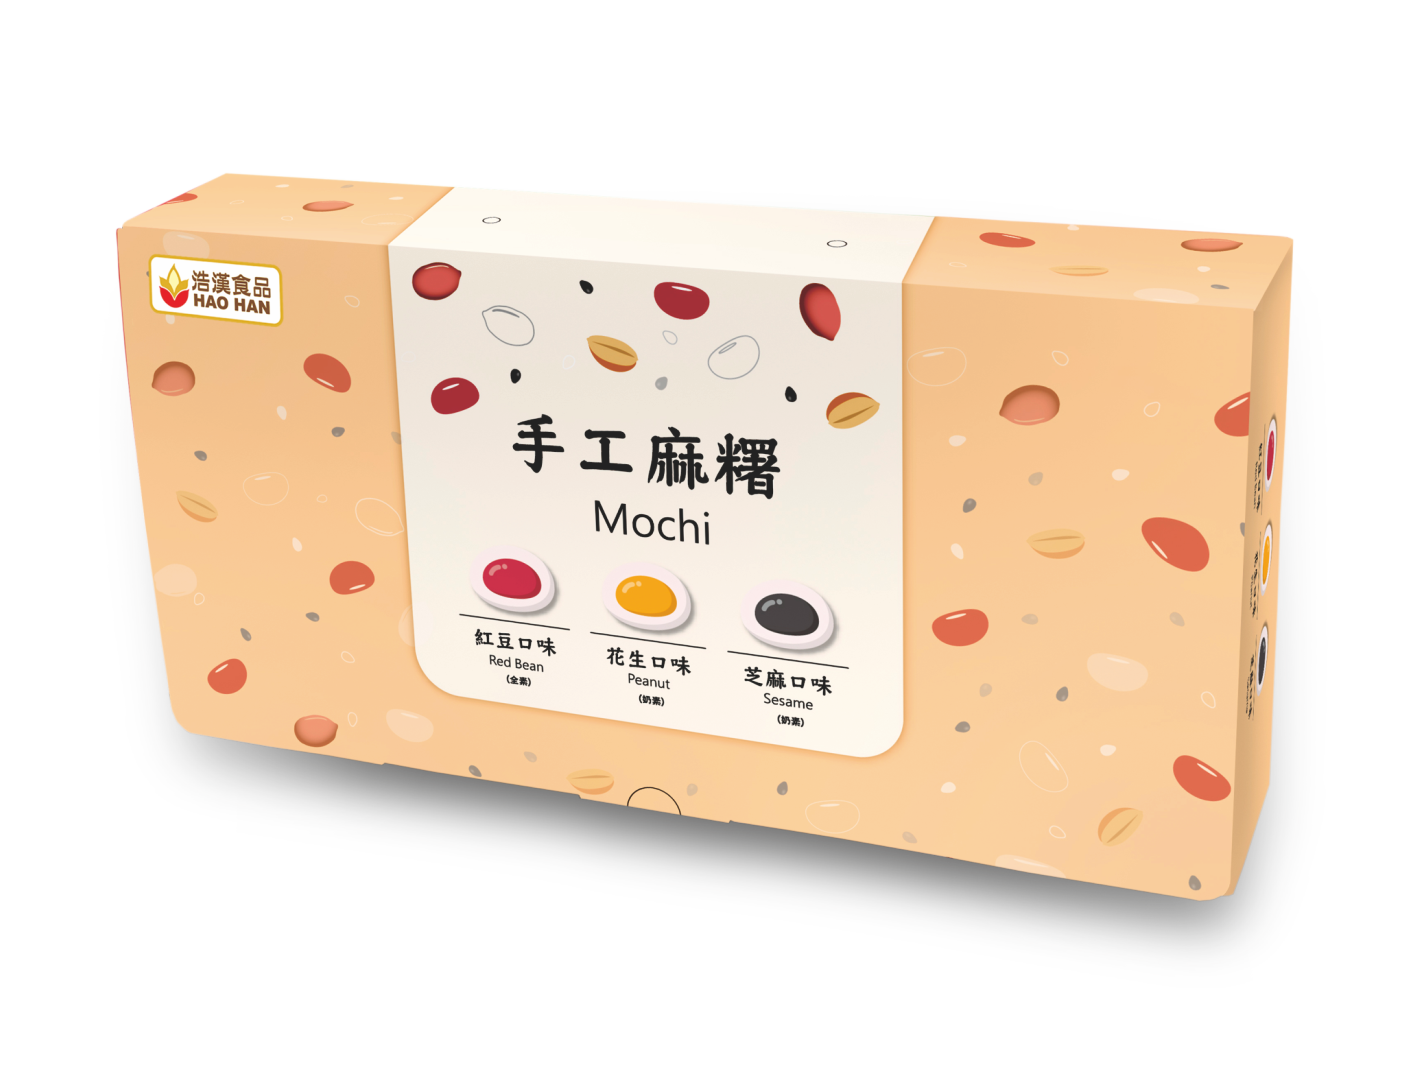 手工麻糬綜合禮盒<br>Mochi Gift Box  |產品資訊|麻糬－通路用|手工麻糬系列-低溫